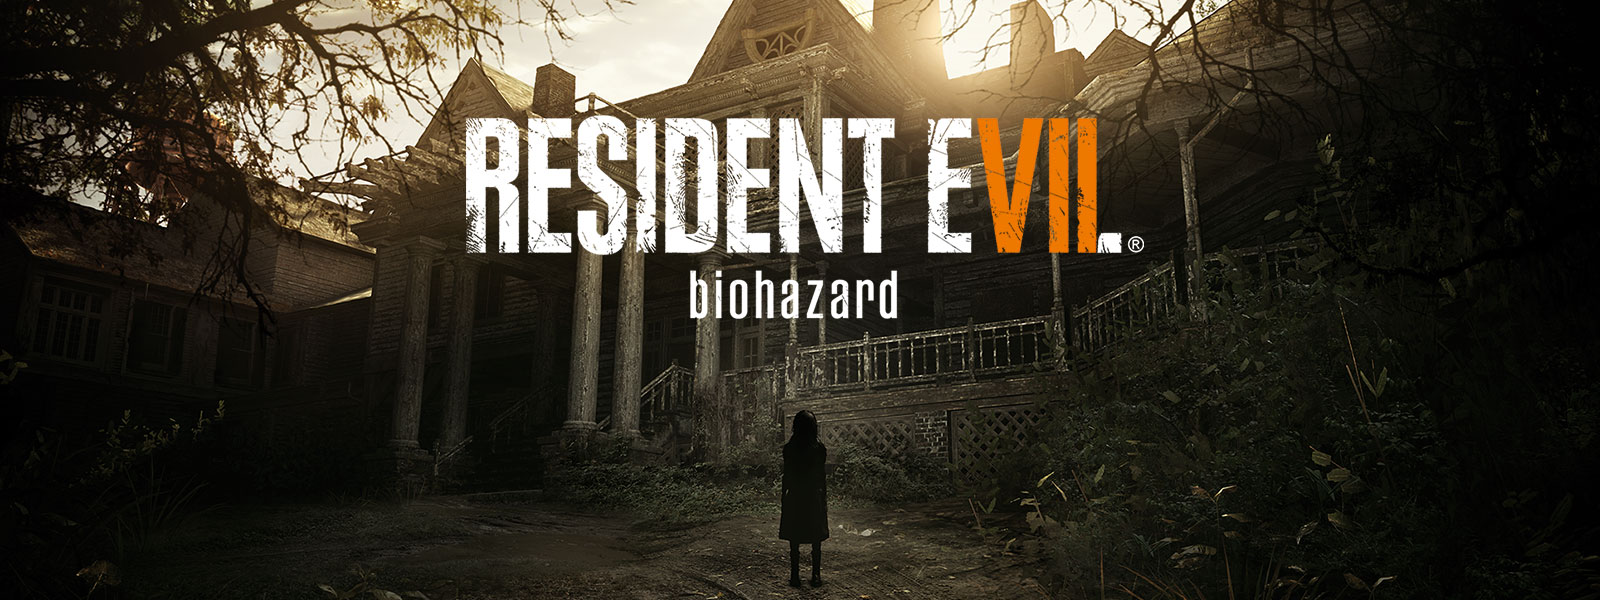 Resident Evil 7 Biohazard Gold Edition – obrázok balenia cez scénu so strašidelnou dievčinou pred strašidelným domom